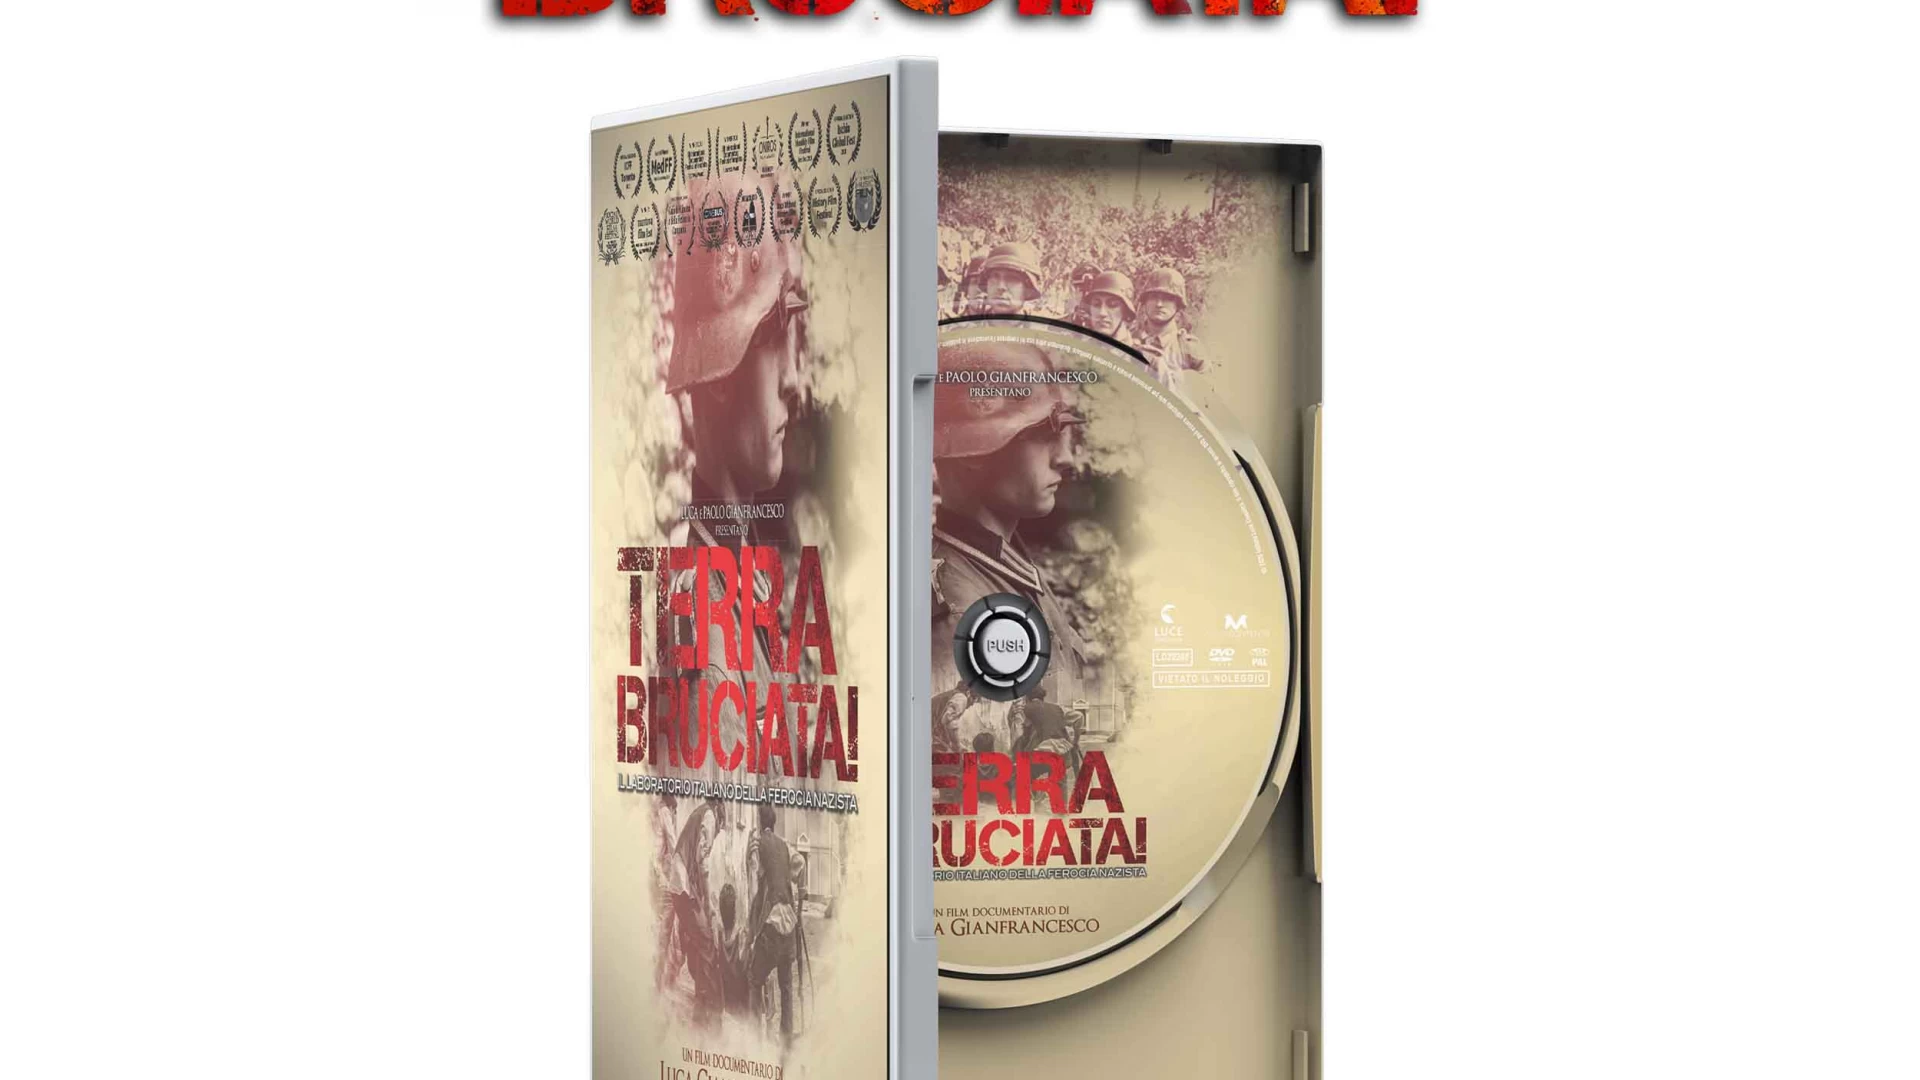 “Terra Bruciata” dallo scorso 13 maggio è in vendita il dvd del film storico documentario del registra Luca Gianfrancesco.